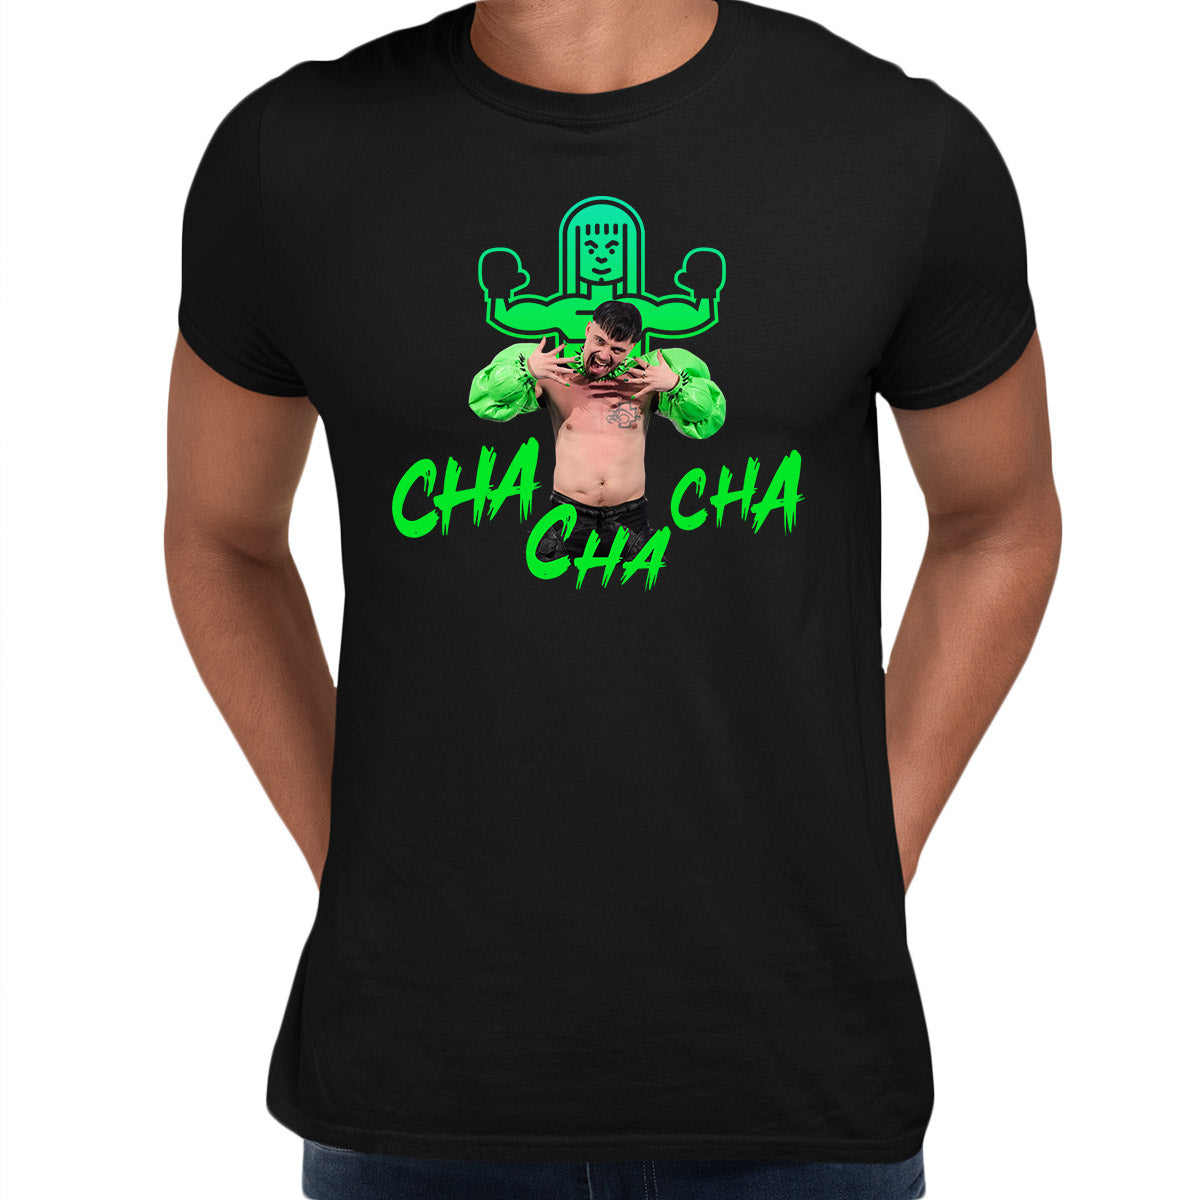 Käärijä Cha Cha Cha Finland Eurovision Song Contest Kaarija Unisex T-shirt